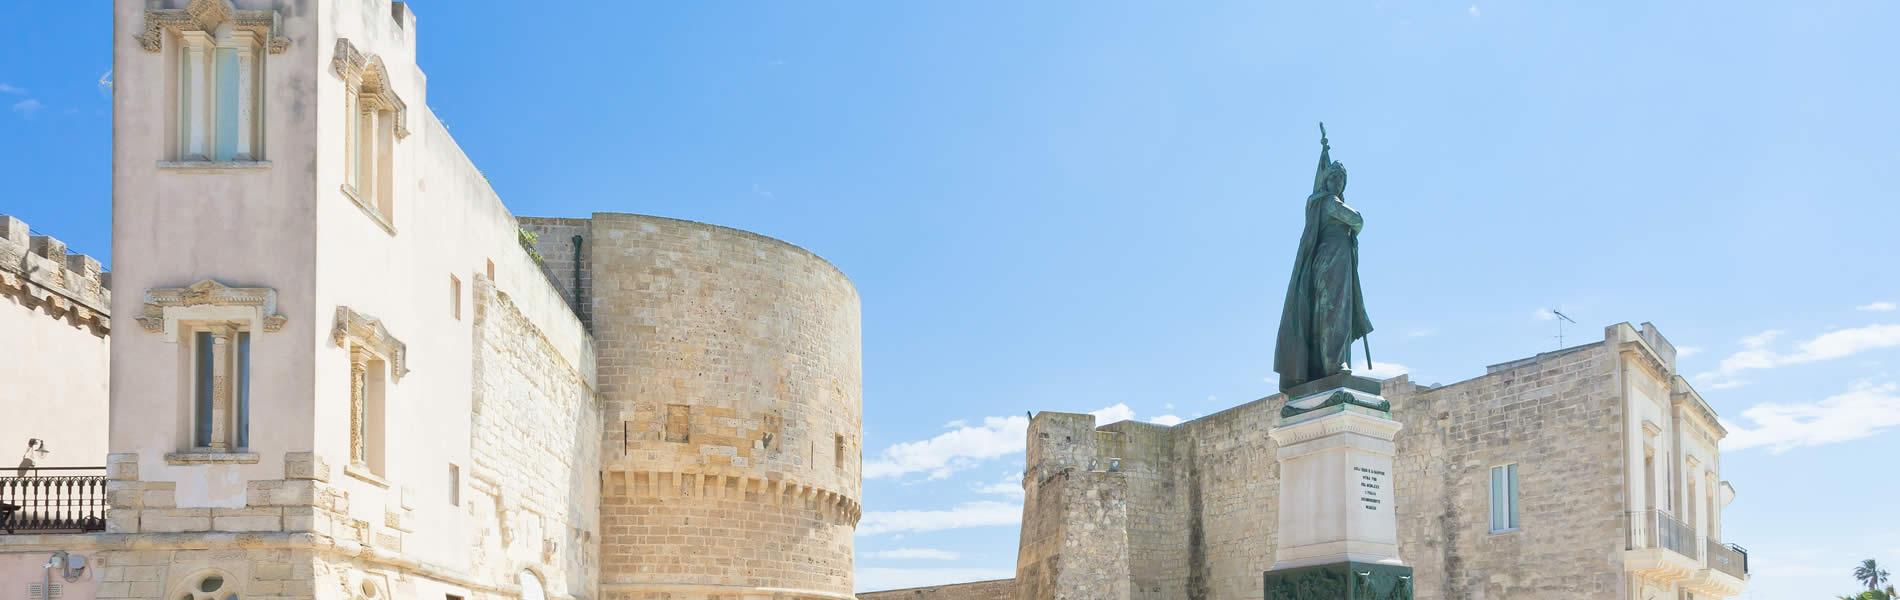 Monumento ai caduti, Otranto Puglia | Eden Viaggi